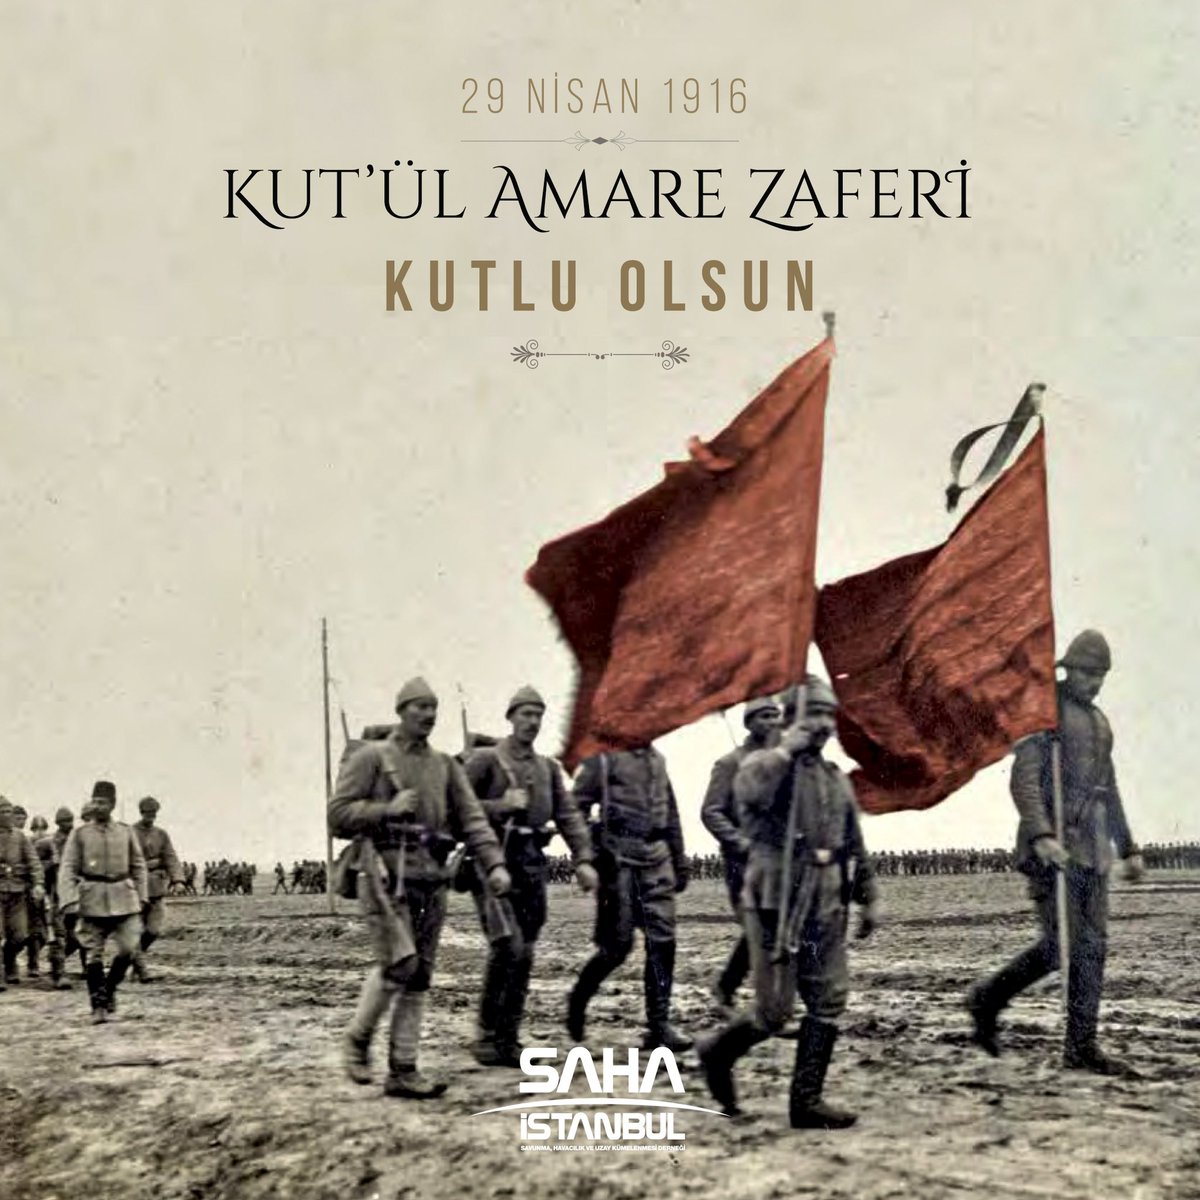 🇹🇷 Tarihimizin destansı zaferlerinden #KutülAmere’nin 108. yıl dönümünde aziz şehitlerimizi saygı ve rahmetle anıyoruz.